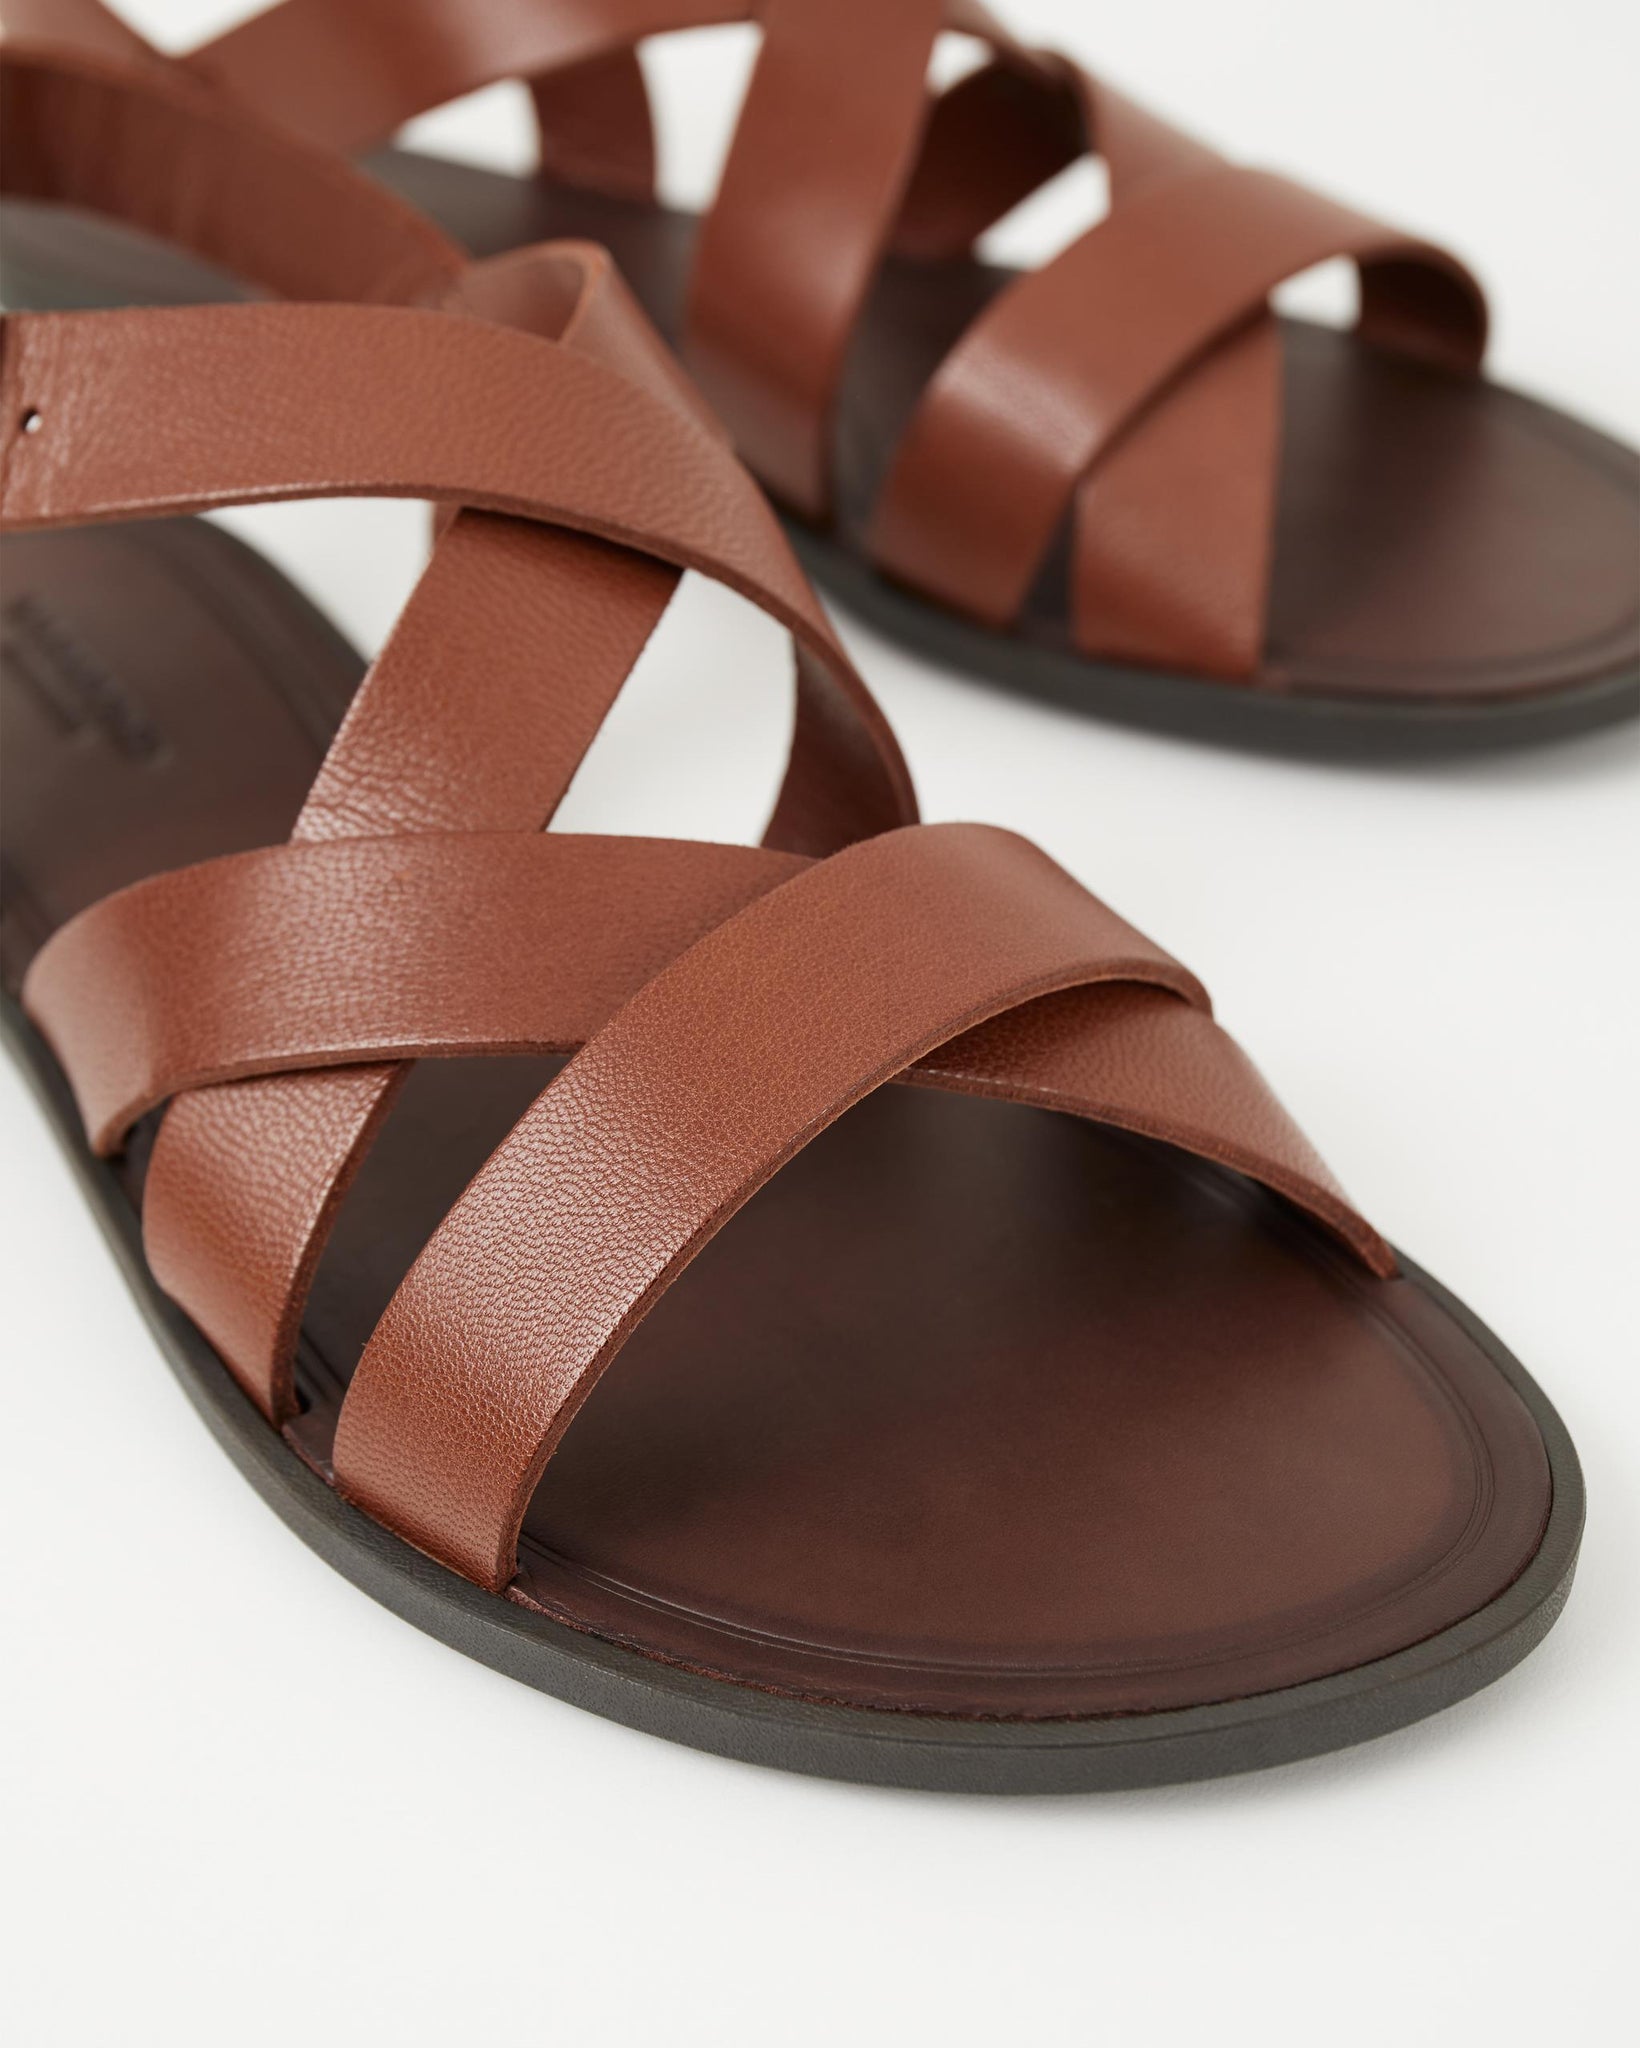 Tia 2.0 (5731-001-22) Sandals - Cognac